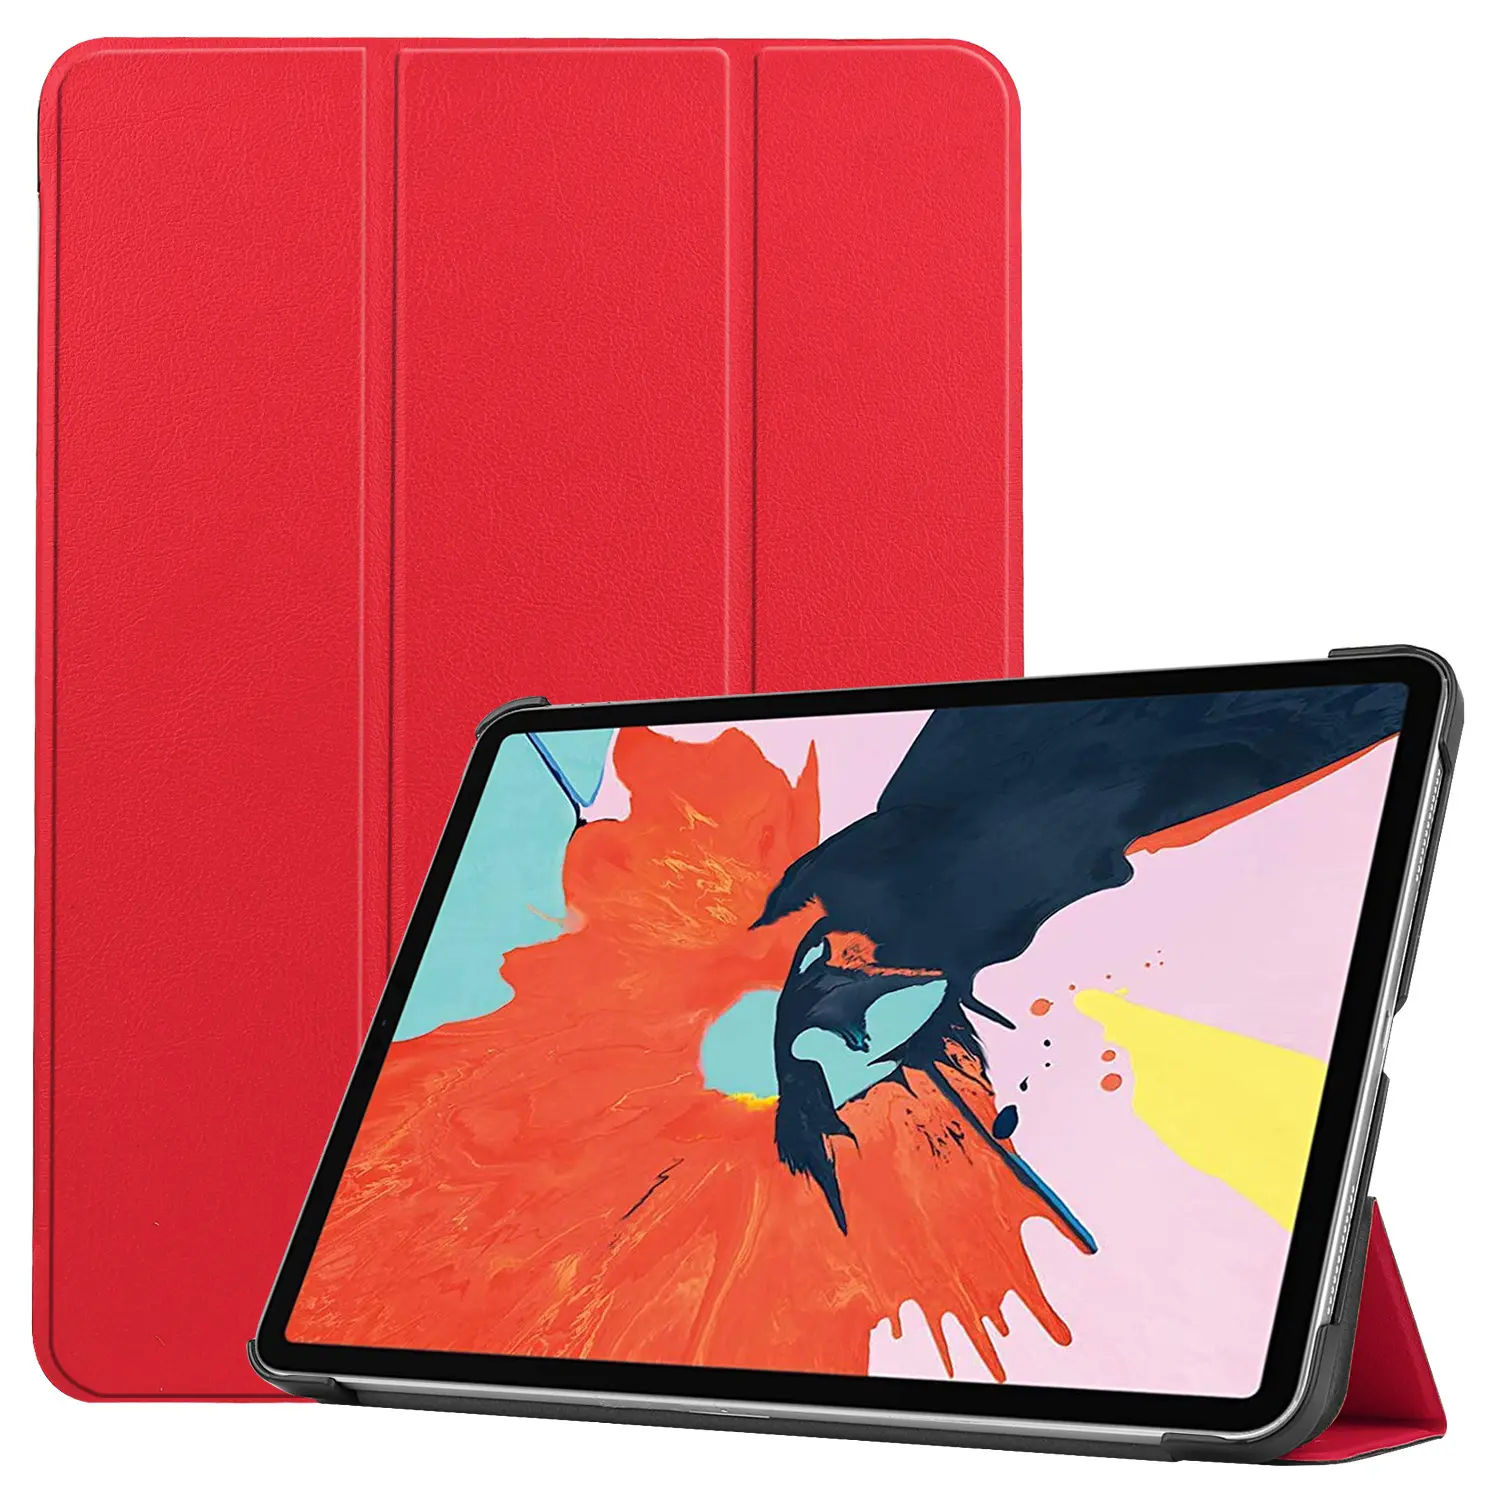 Ốp Cho iPad Air 4 2020, Ốp Da PU Mỏng Tự Động Tắt/Mở Giá Đỡ Thông Minh Ốp Lưng Folio Cho iPad Air Thế Hệ Thứ 4 10.9 Inch